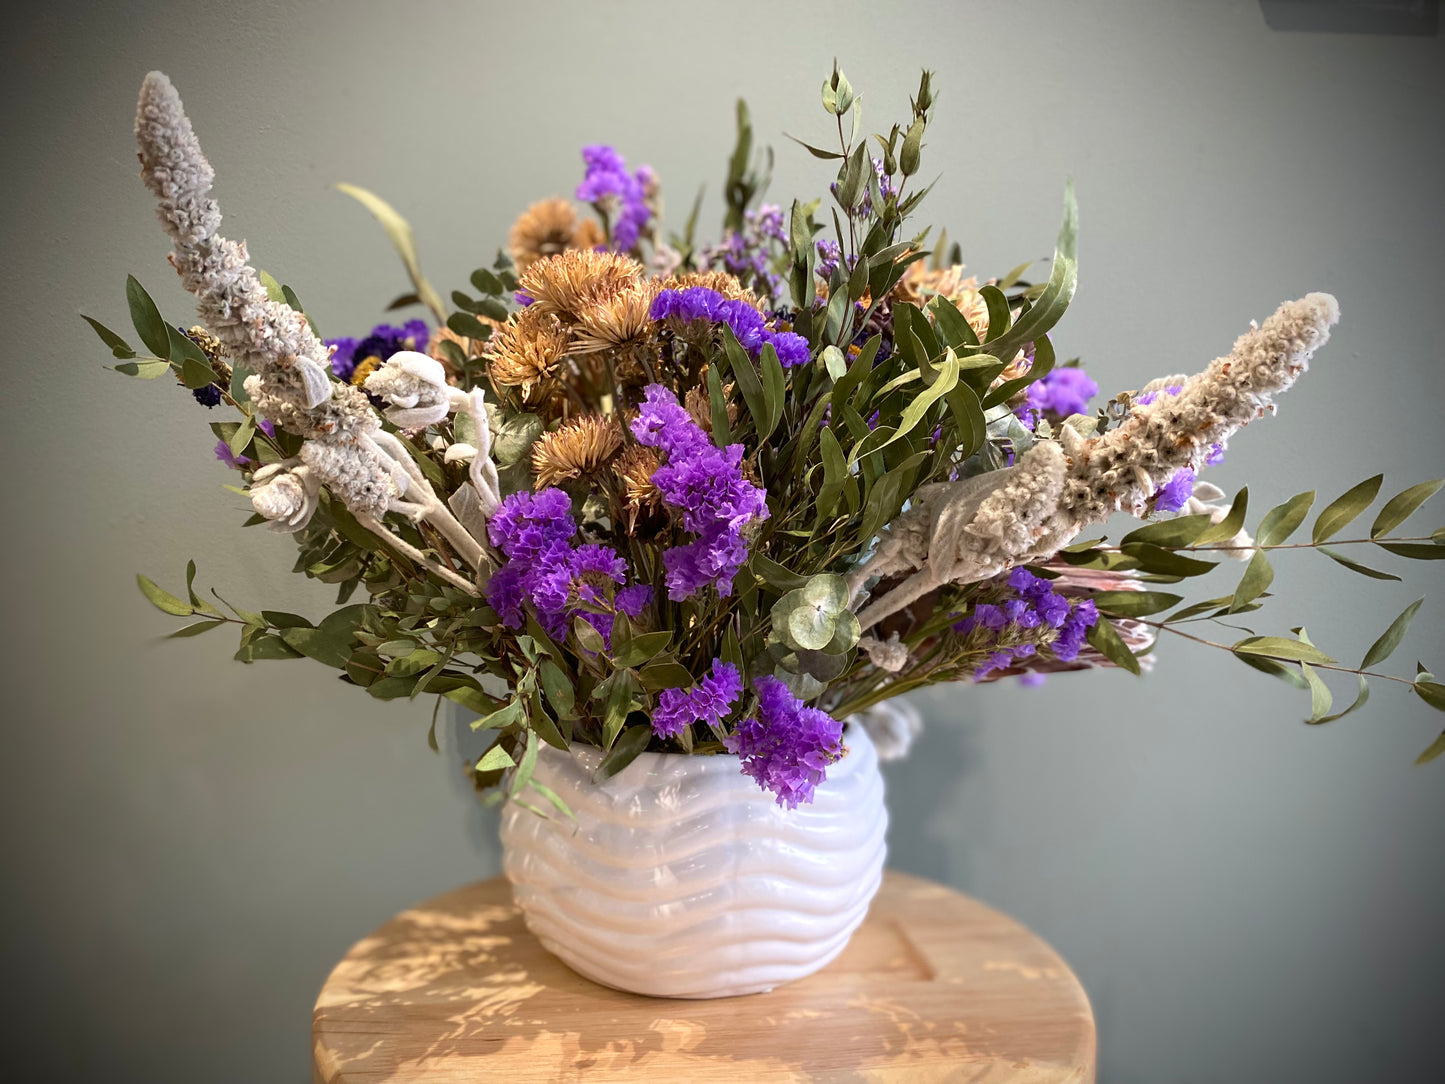 Dried flower arrangement in purple